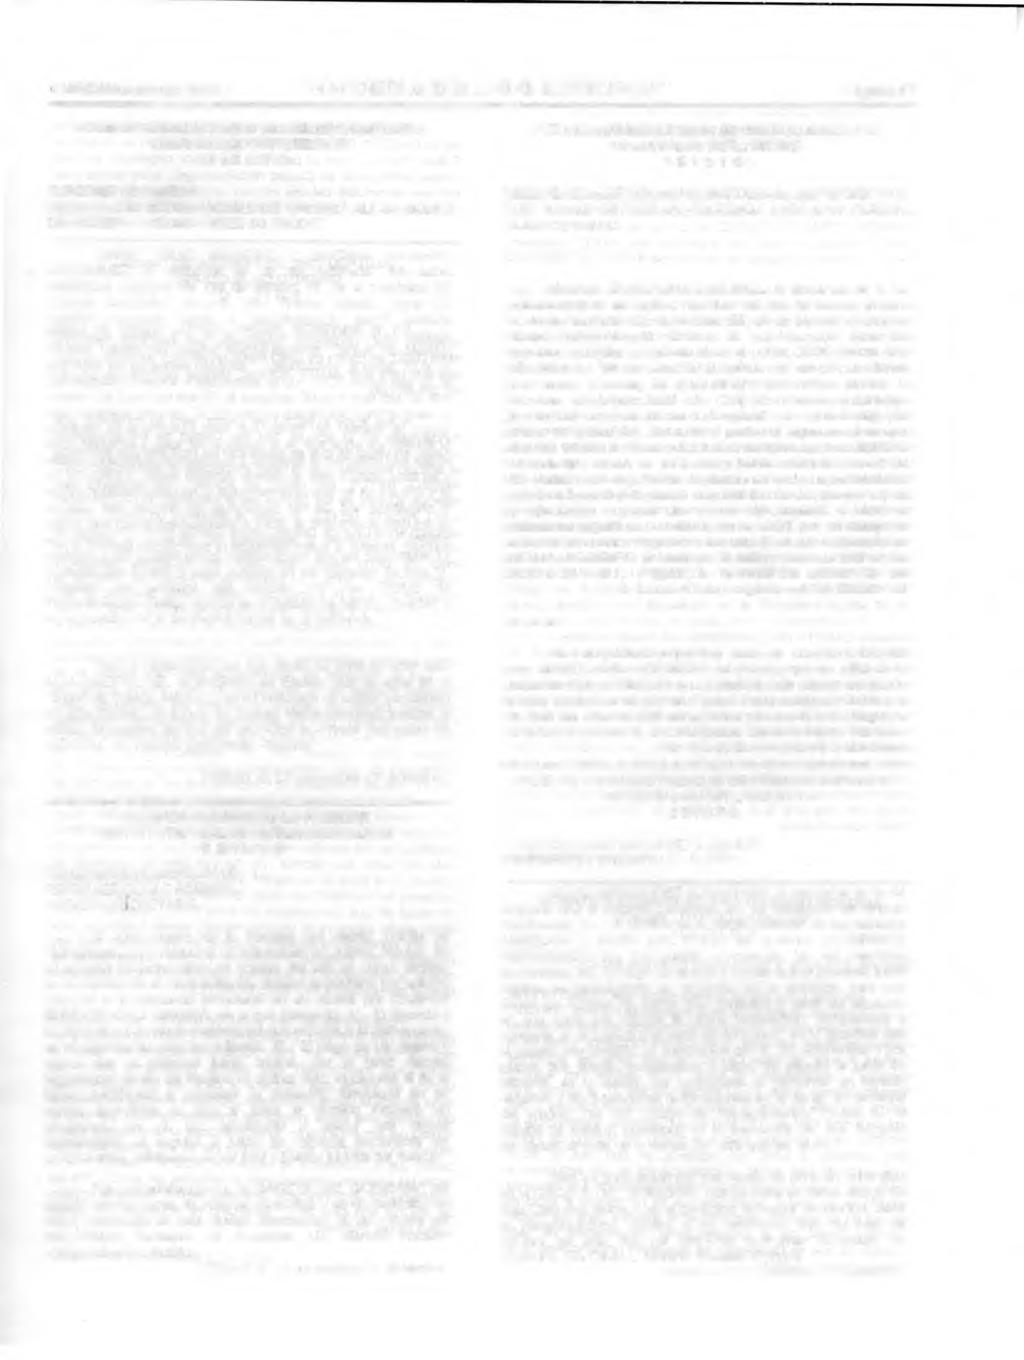 -1 de diciembre del 2001 "GACETA DEL GBIERN" Página 5 JUZGAD SEGUND CIVIL DE PRIMERA INSTANCIA NEZAHUALCYTL, MEXIC EDICT EXPEDIENTE: 705/2001.